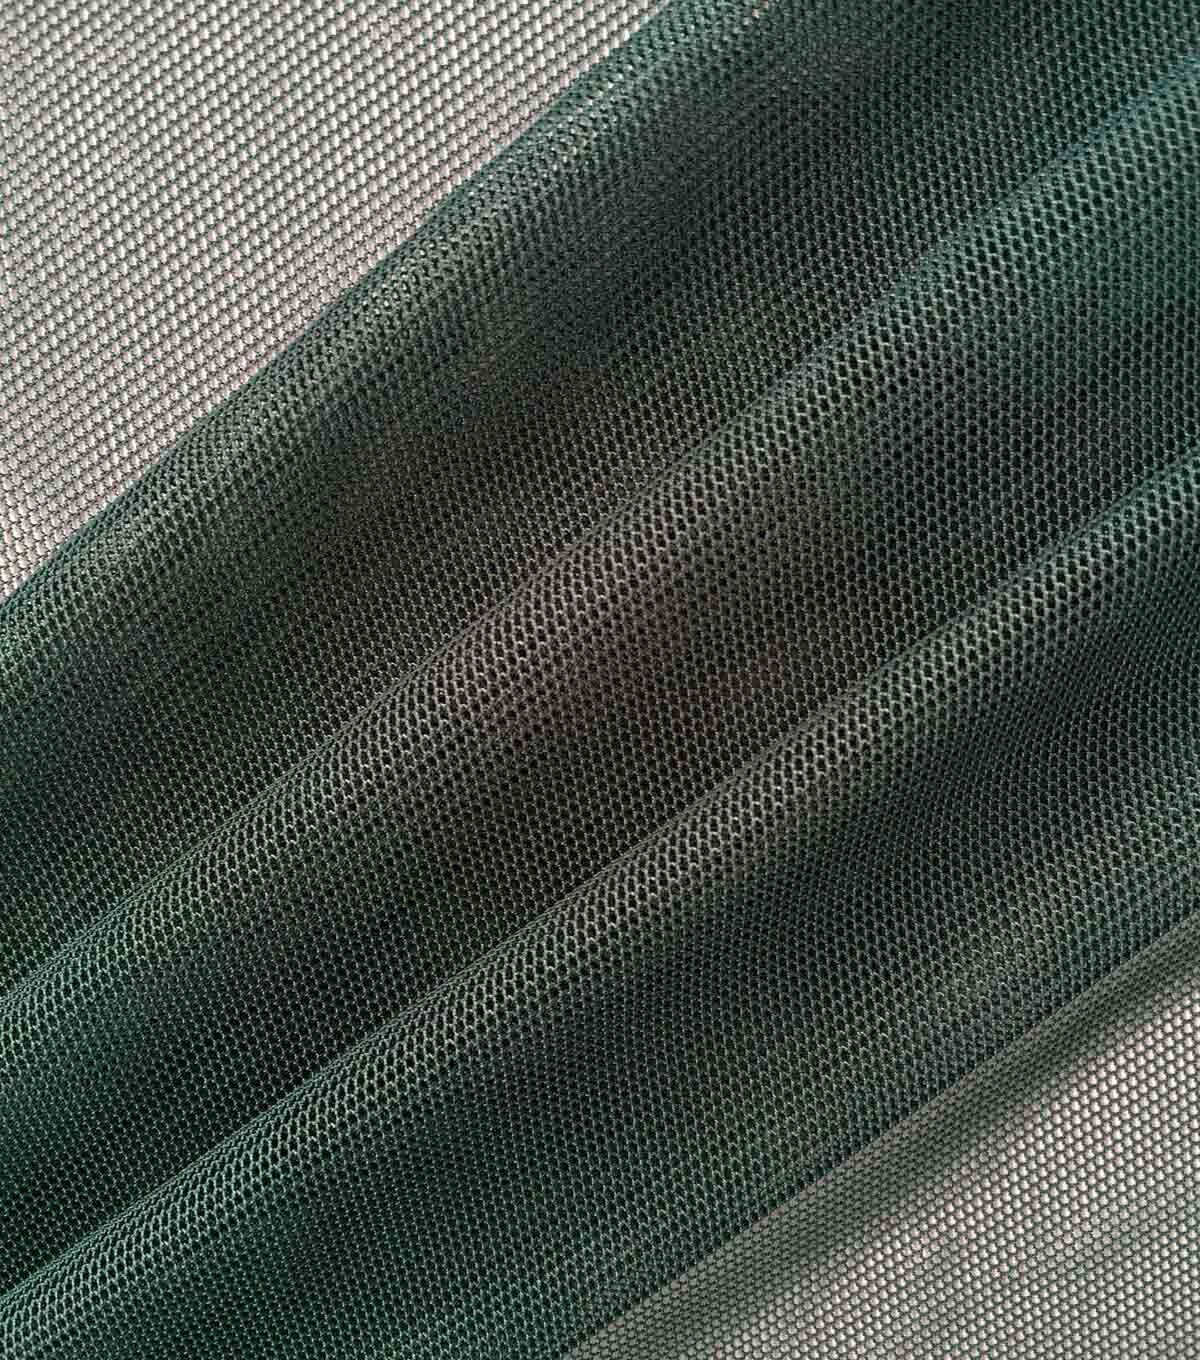 stretch mesh fabric joann